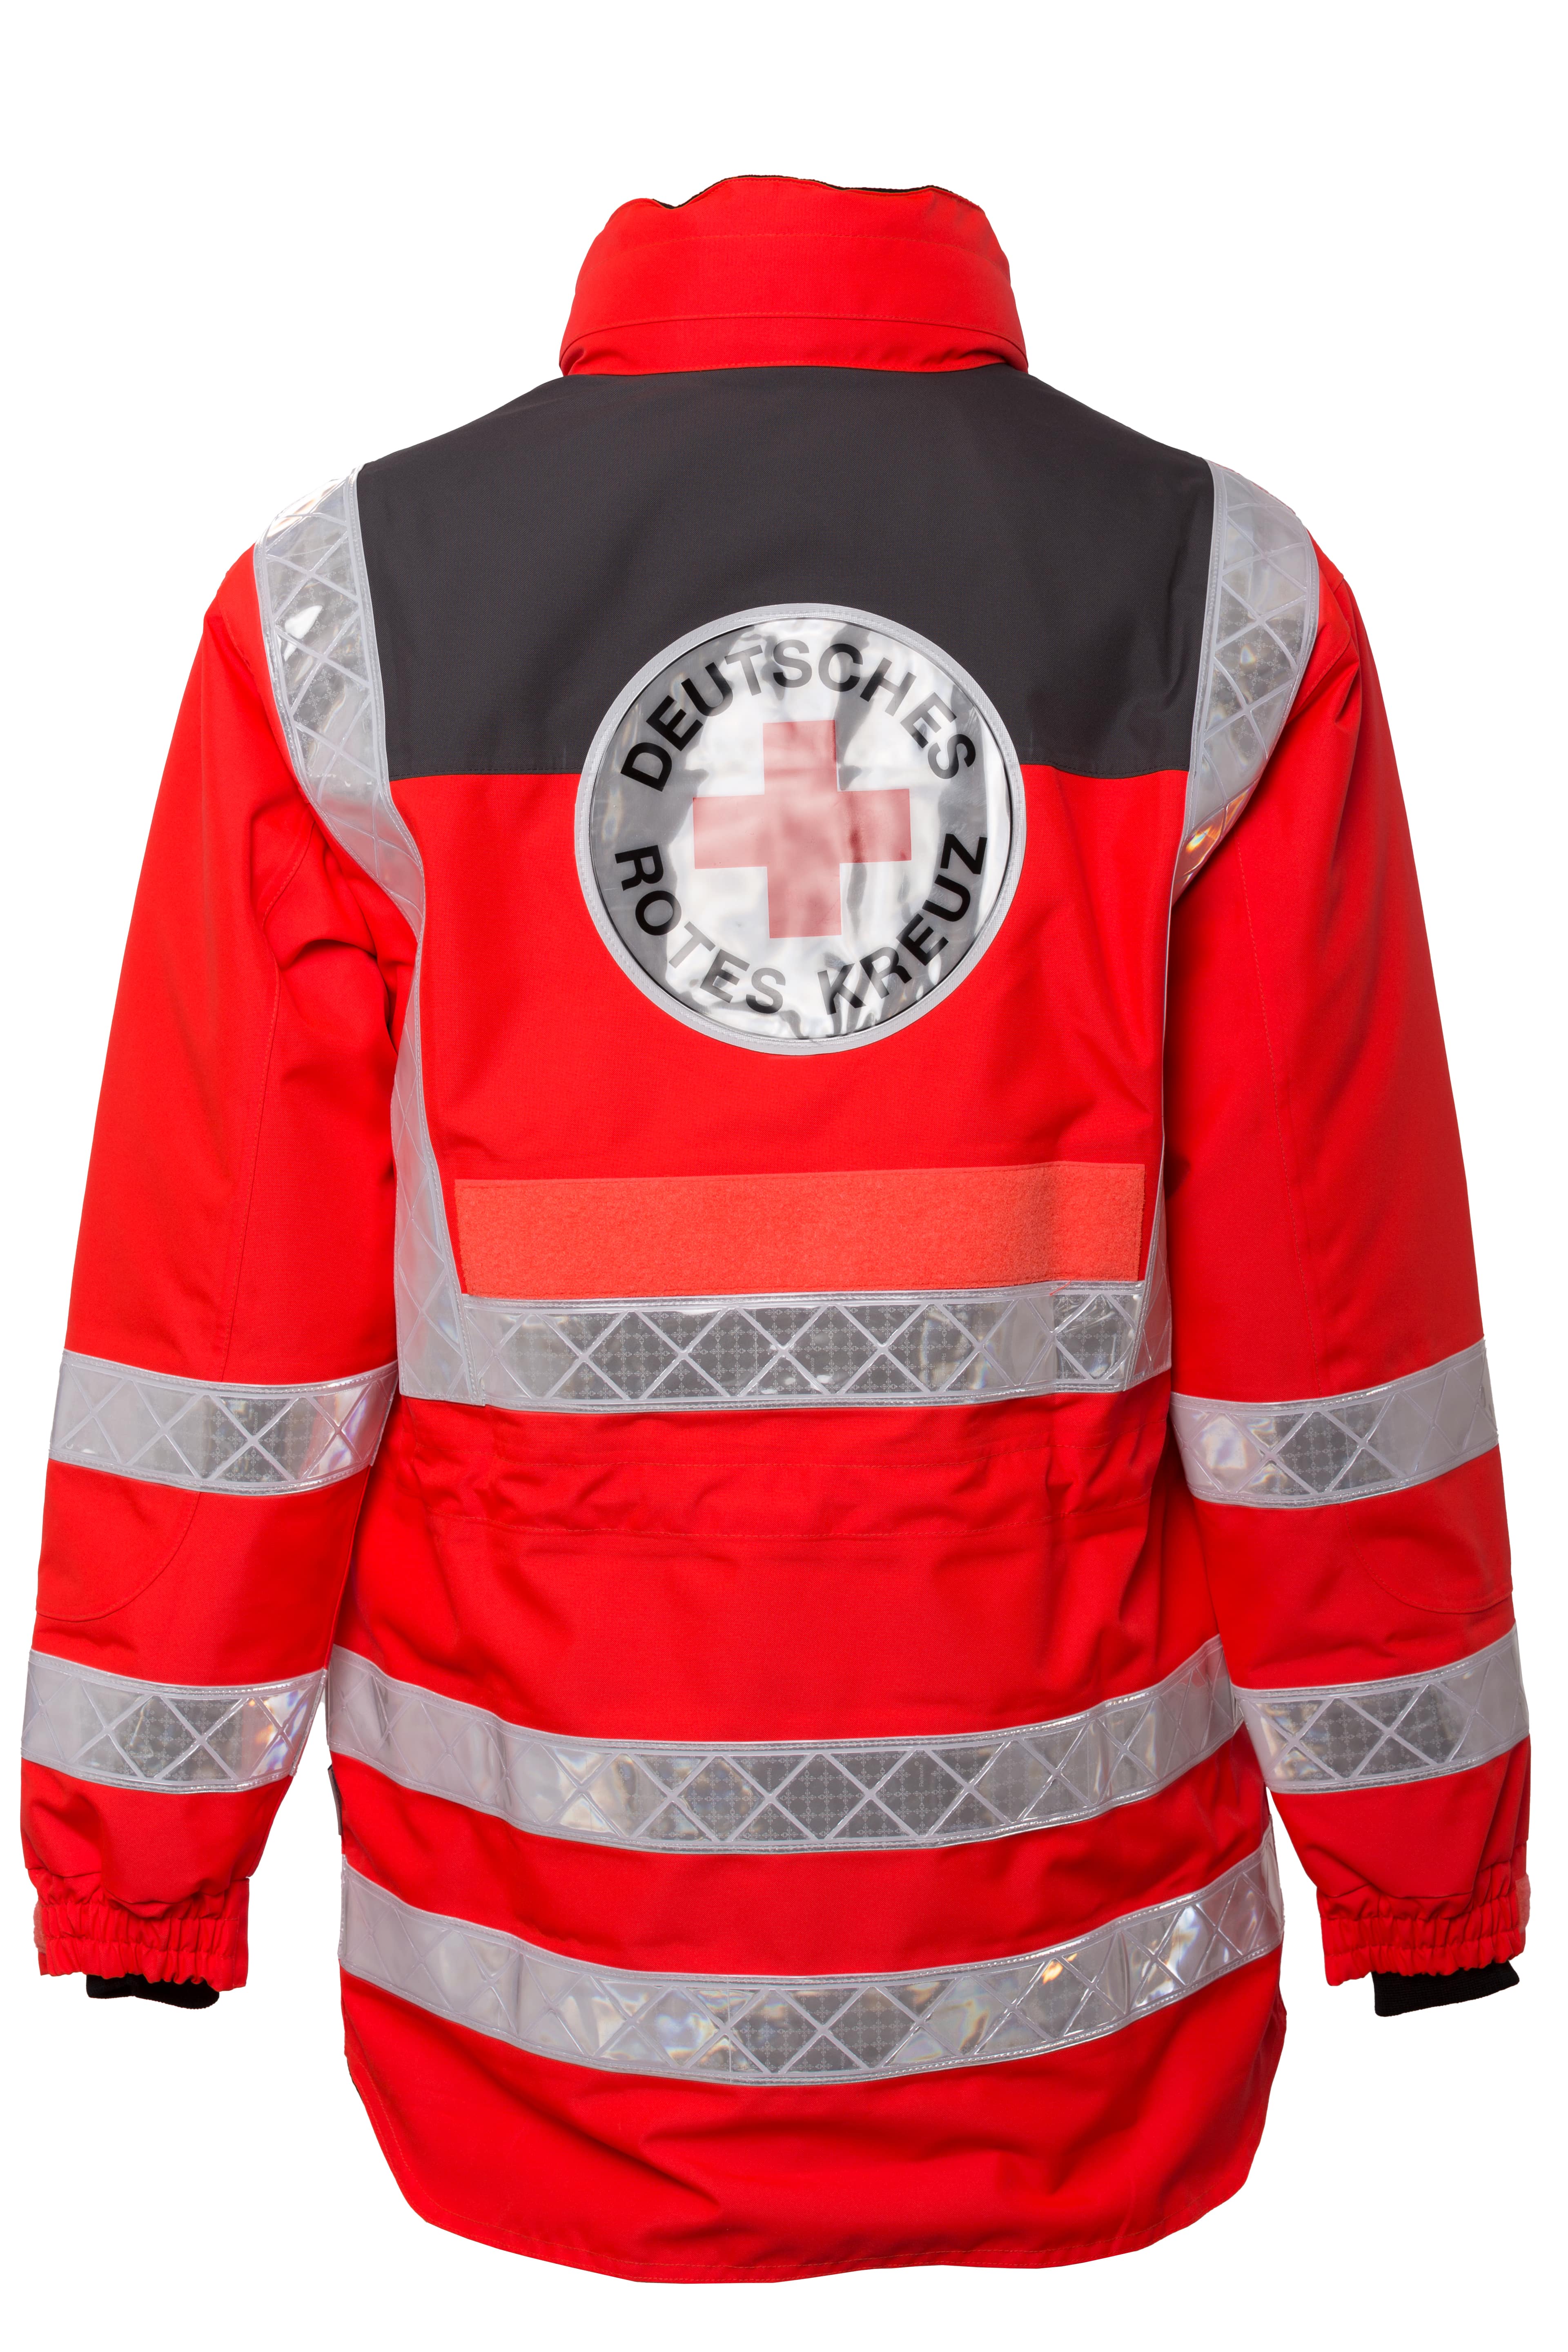 Rescuewear Midi-Parker  DRK Hessen HiVis Klasse 3 Neon Rot / Grau  - S